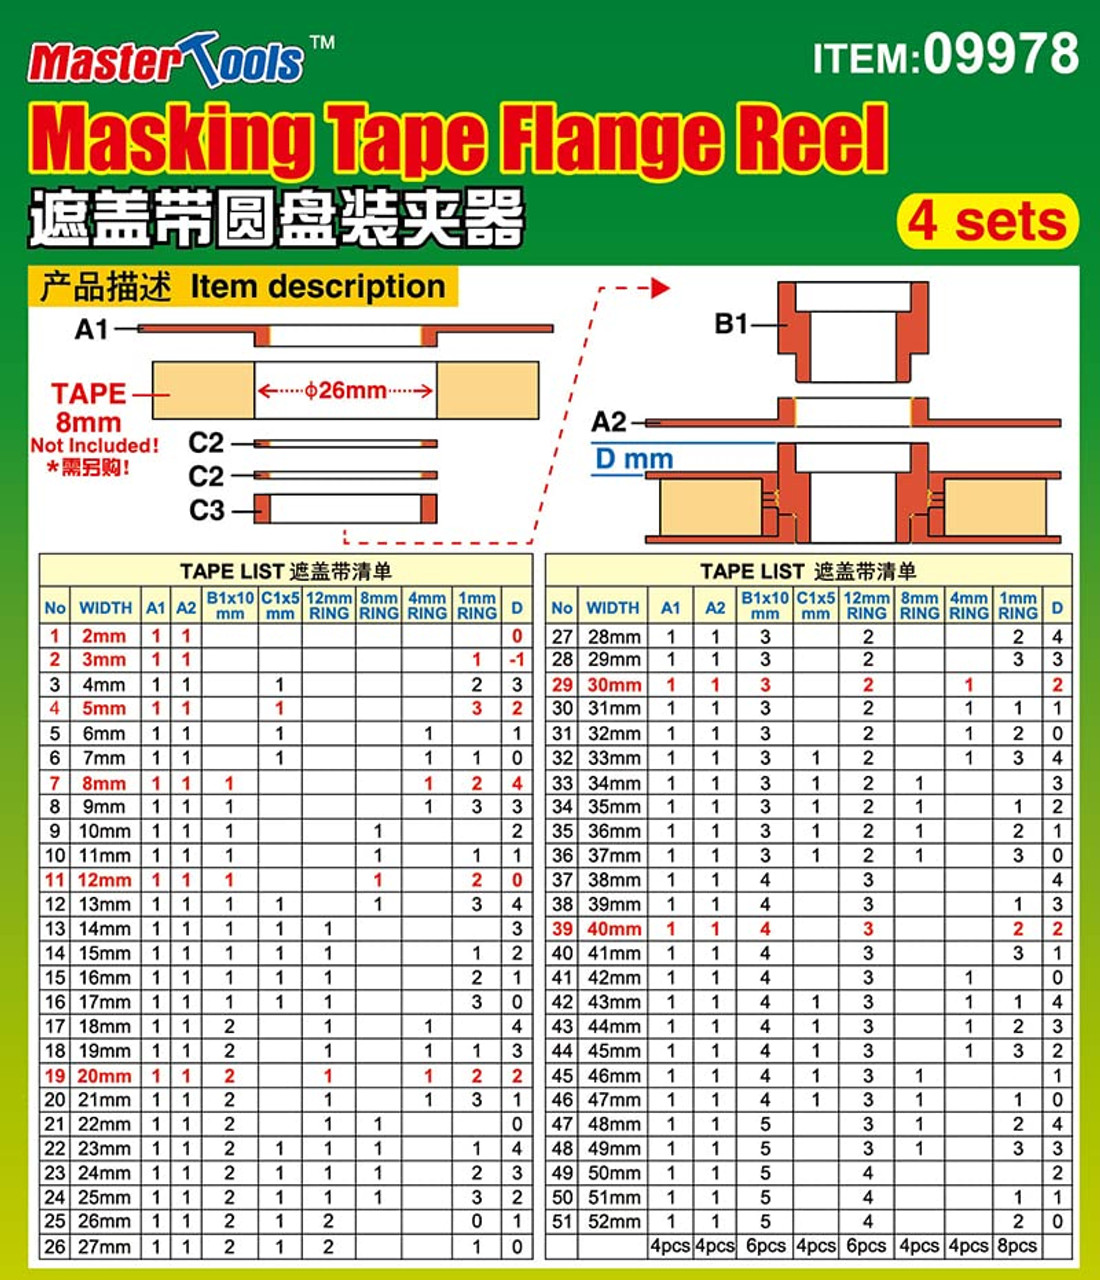 MASKING TAPE FLANGE REEL - 4 SETS - 9978